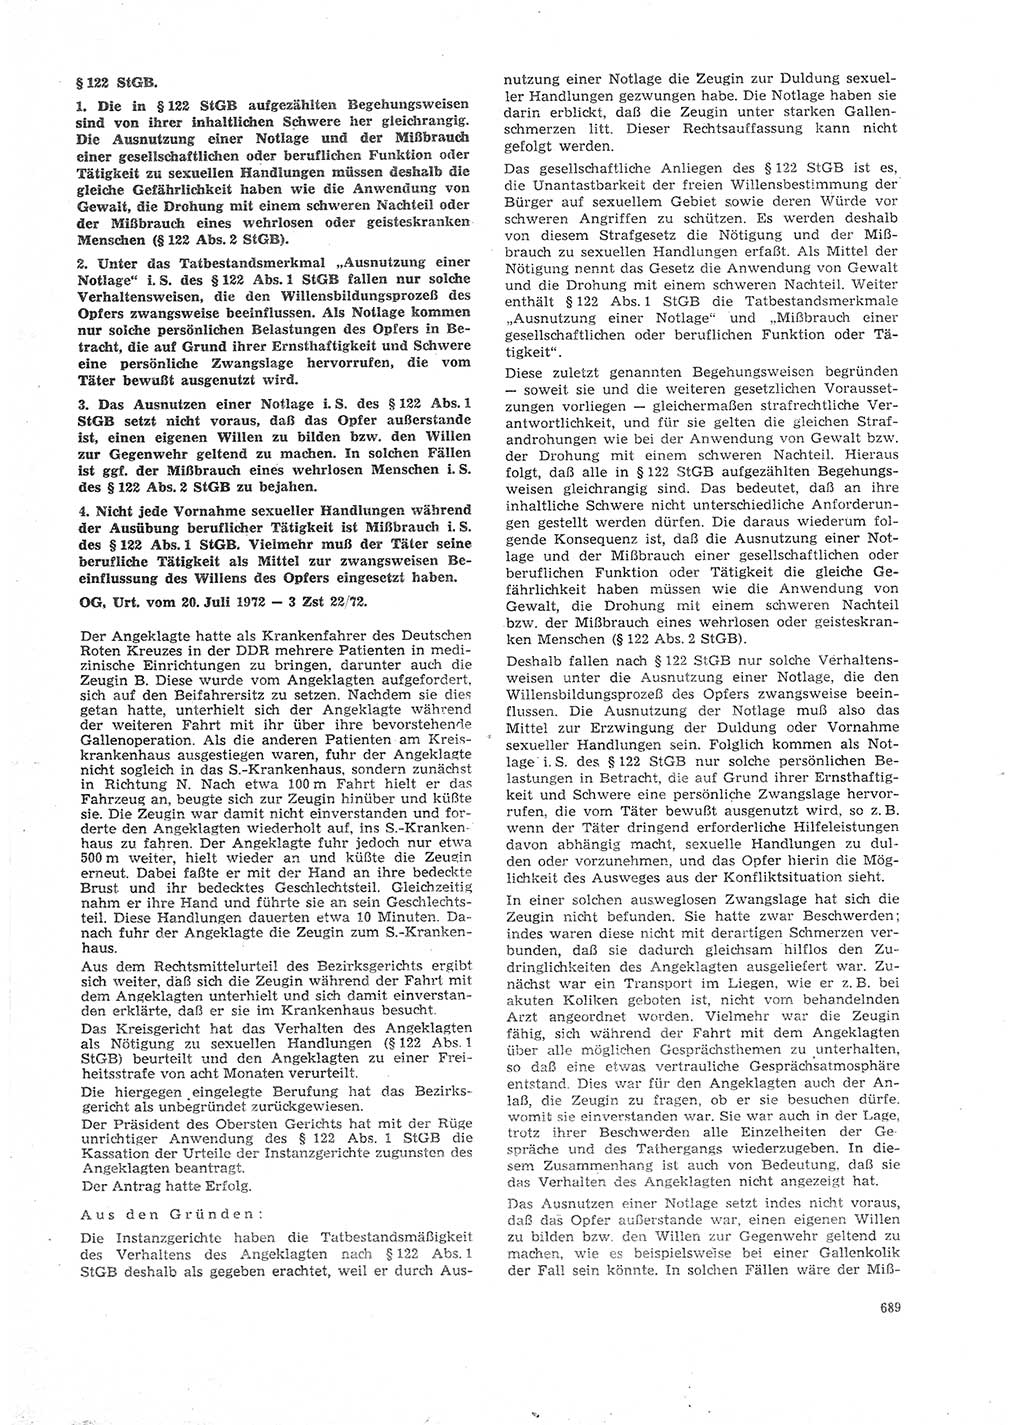 Neue Justiz (NJ), Zeitschrift für Recht und Rechtswissenschaft [Deutsche Demokratische Republik (DDR)], 26. Jahrgang 1972, Seite 689 (NJ DDR 1972, S. 689)